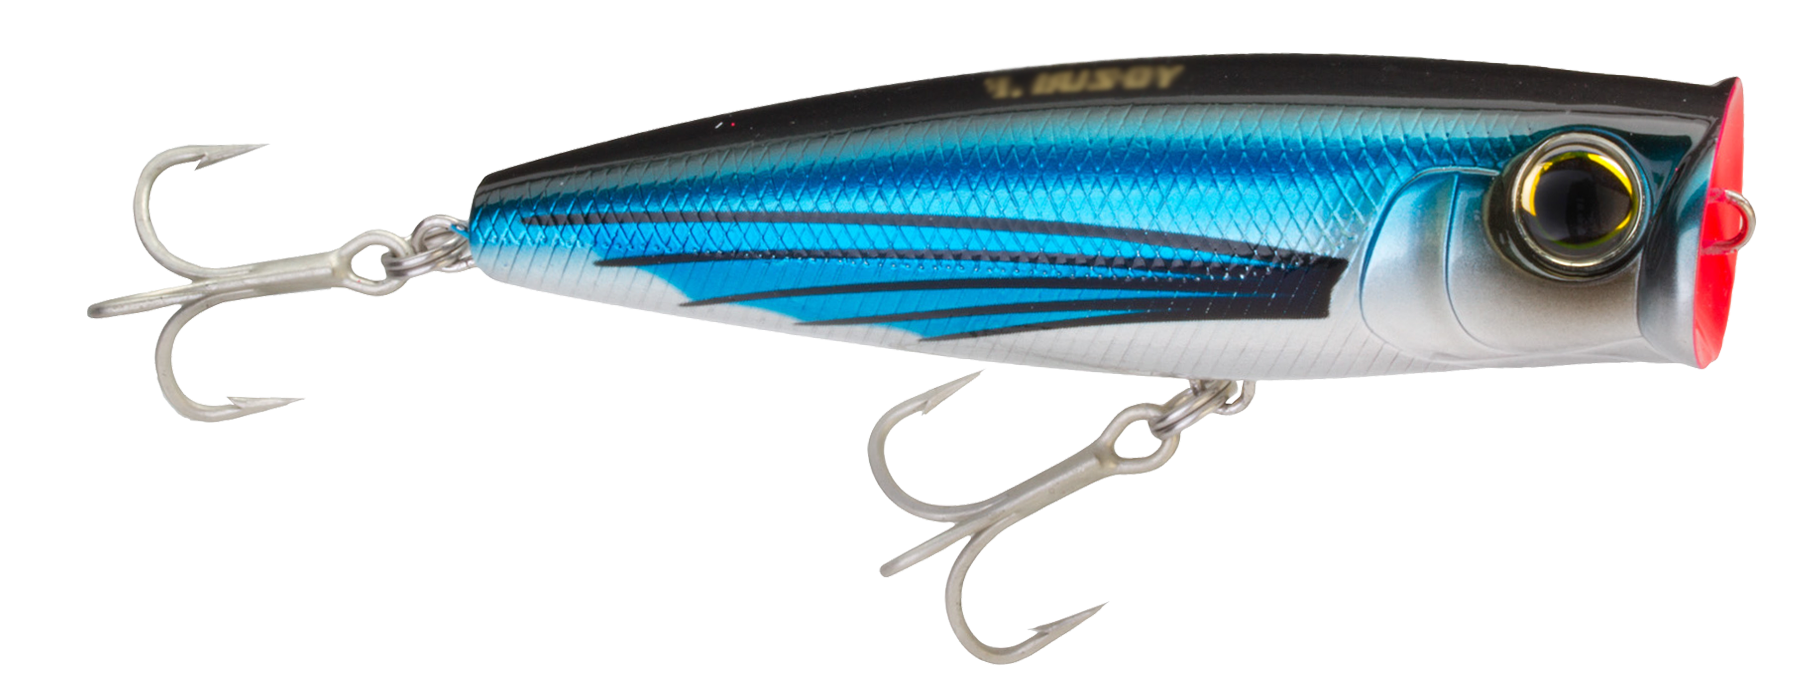 Yo-Zuri Hydro Popper - 4-3/4 - Flying Fish